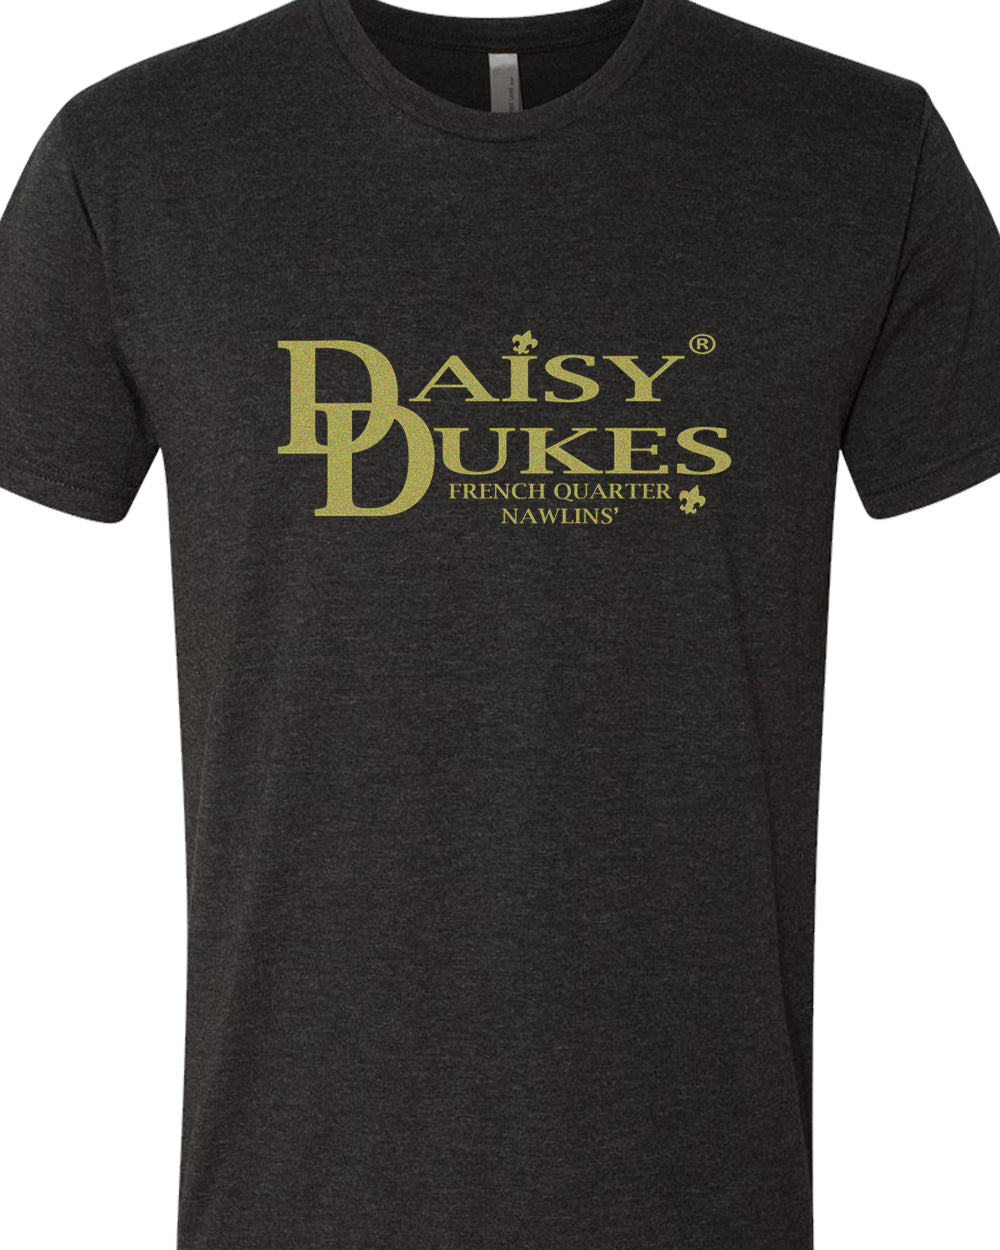 Daisy Dukes® French Quarter Nawlins-Daisy Dukes Restaurant Apparel-Daisy Dukes Restaurant Store